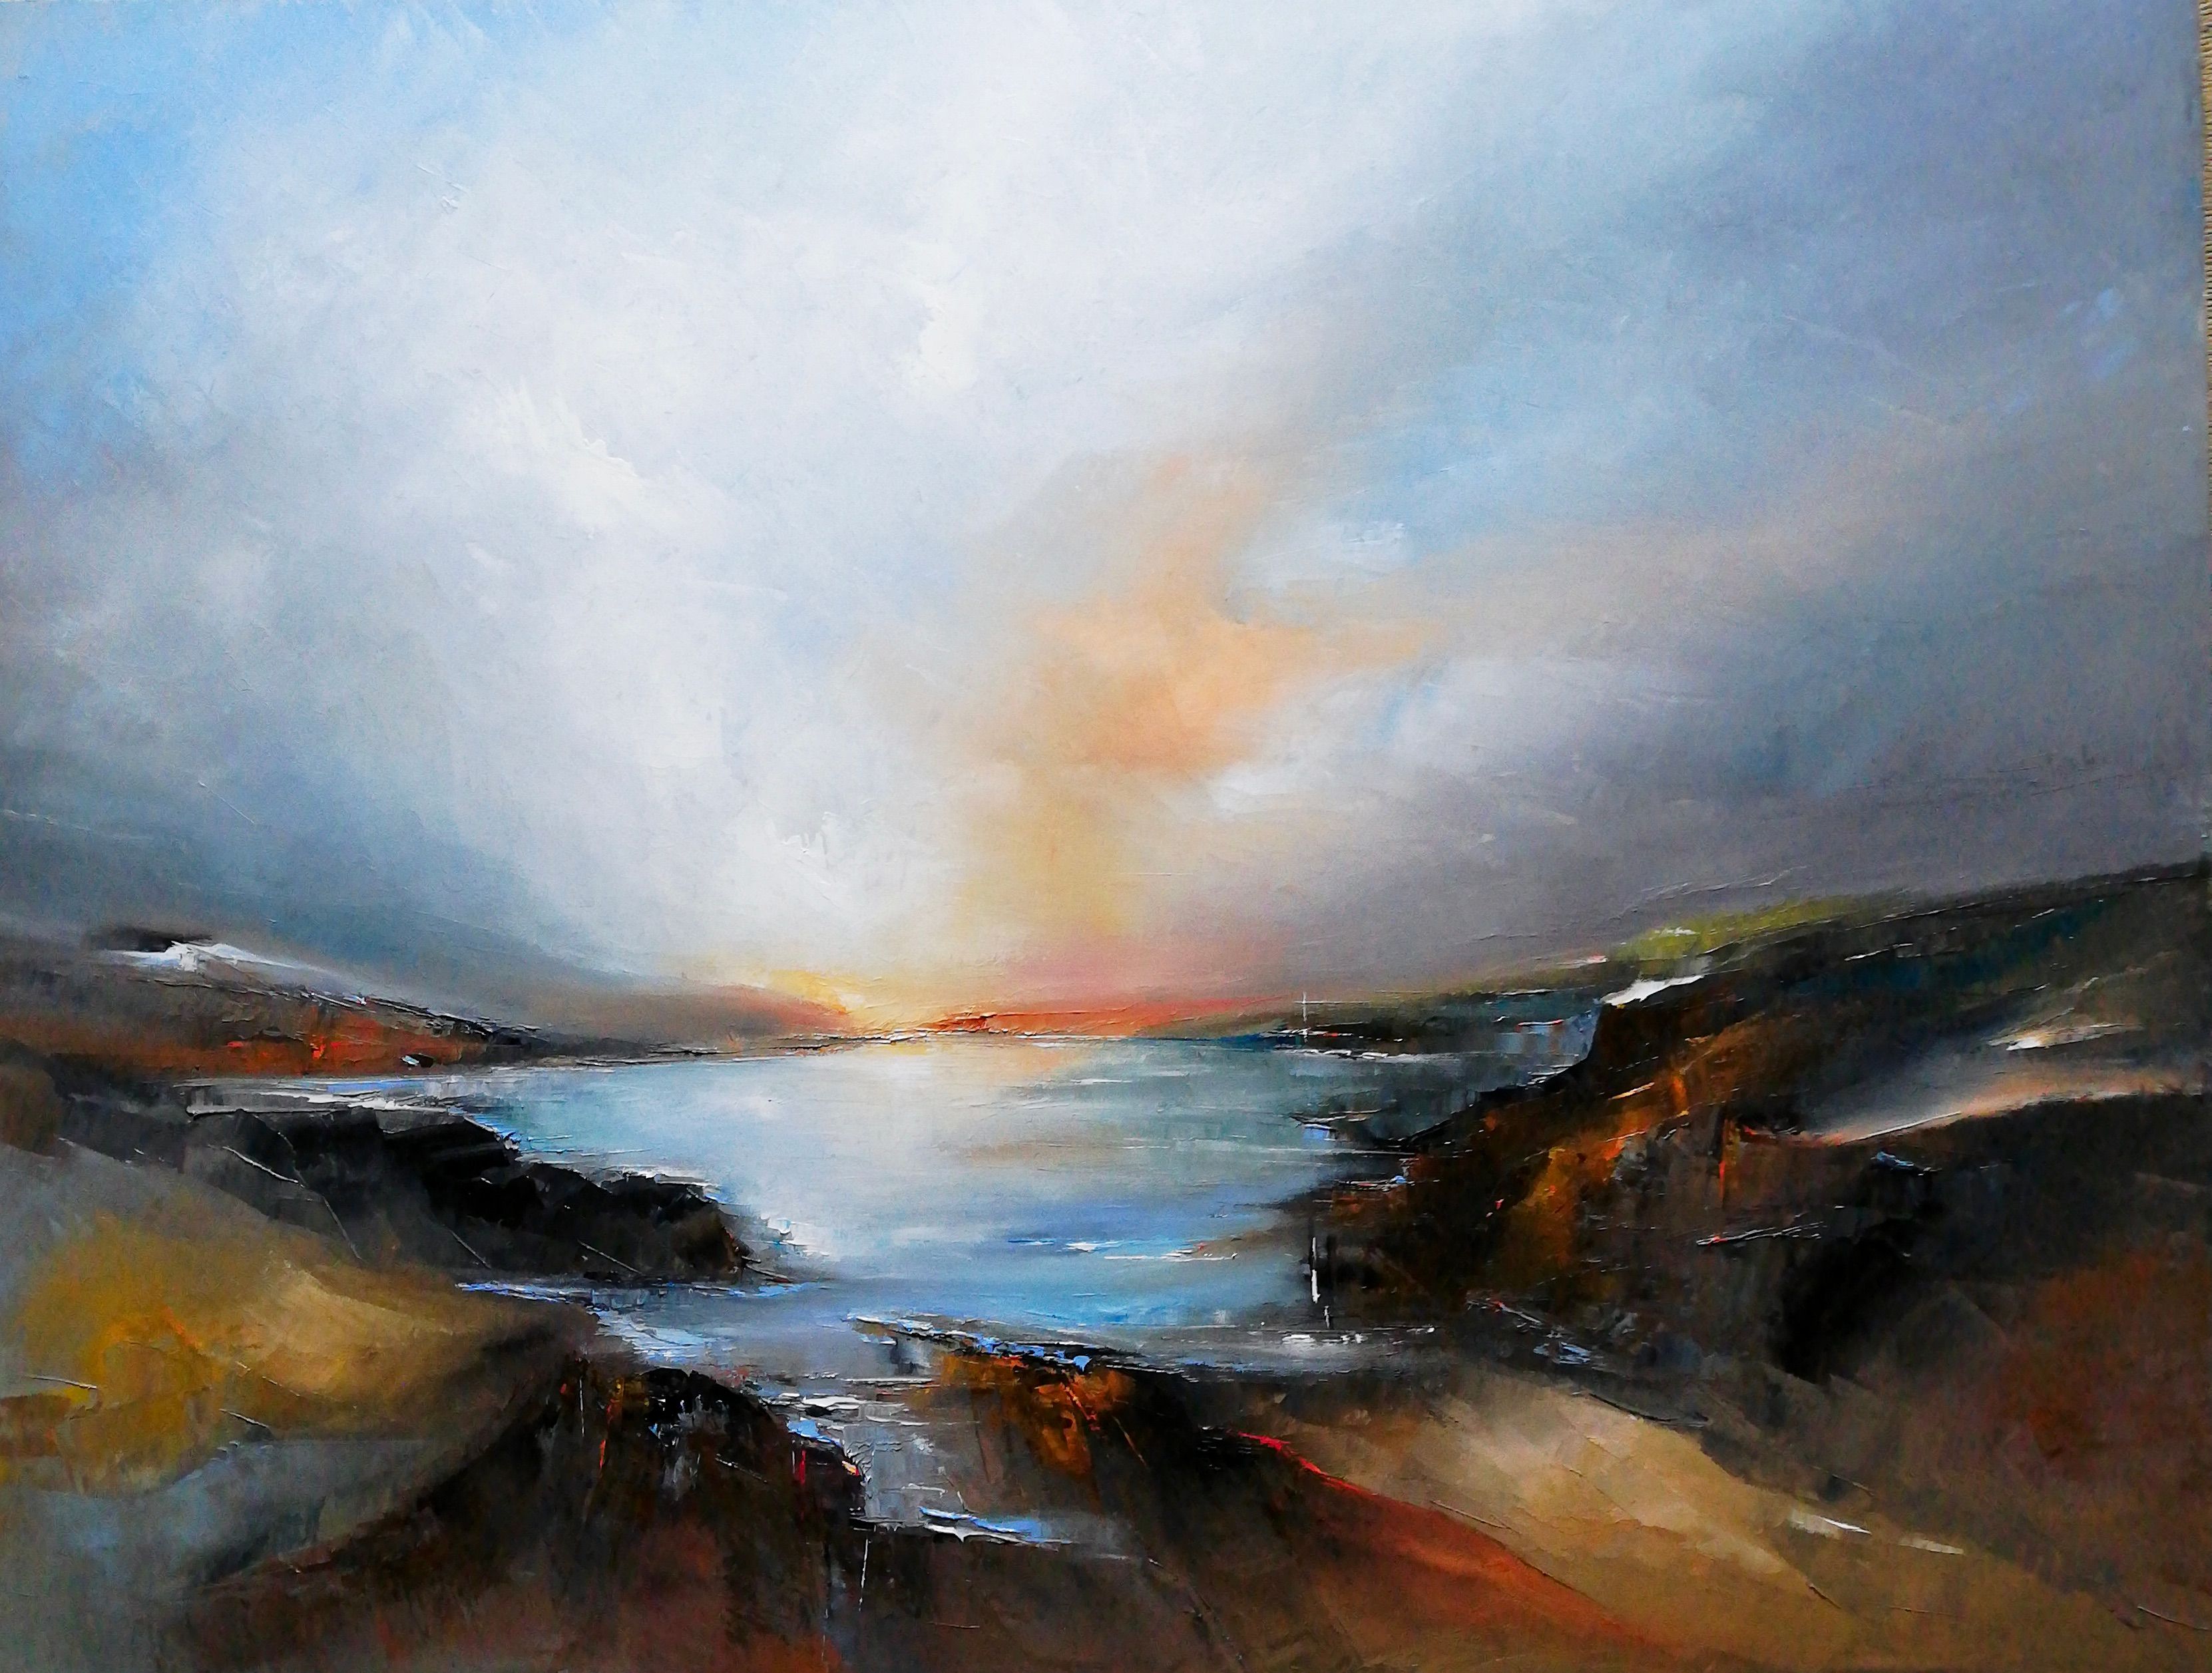 Philippe Meslin "North coast" tableau, est une peinture à l'huile figurative en couleur d'une côte nord française